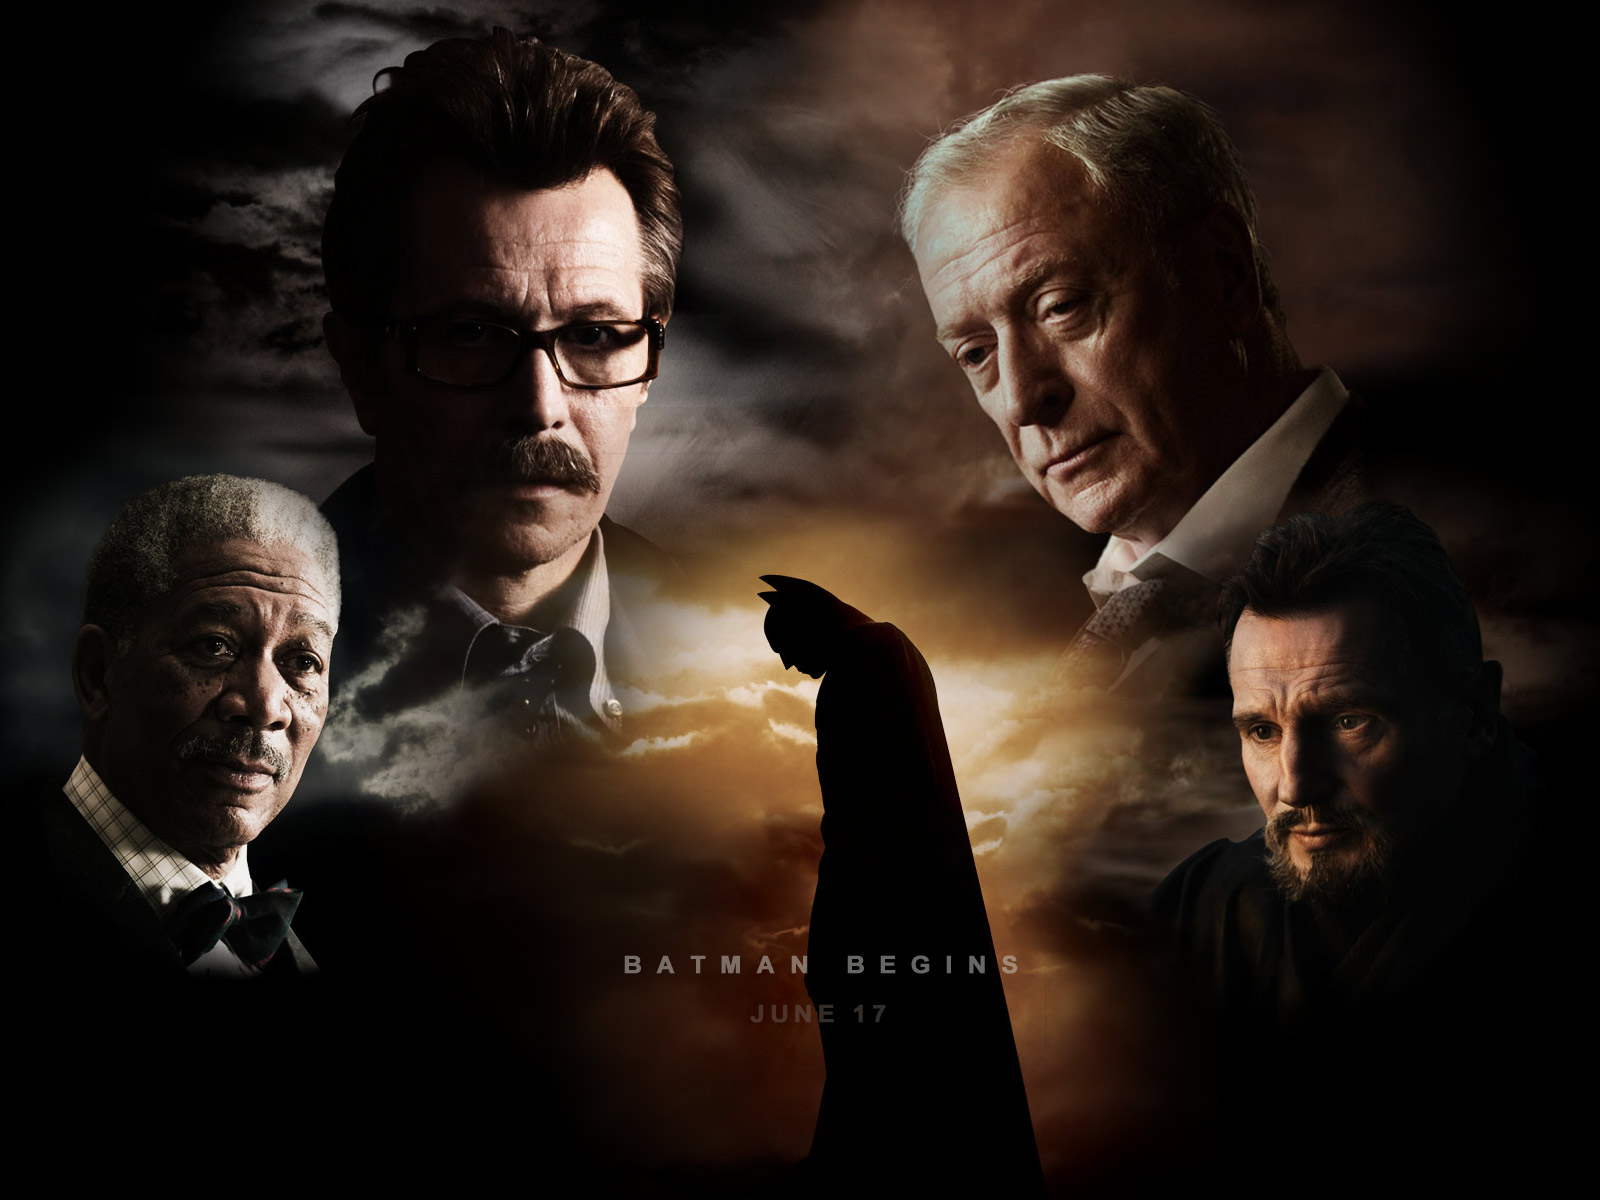 Batman начало. Batman begins. Бэтмен: начало (Batman begins) 2005 poster. Batman begins 2005 poster.